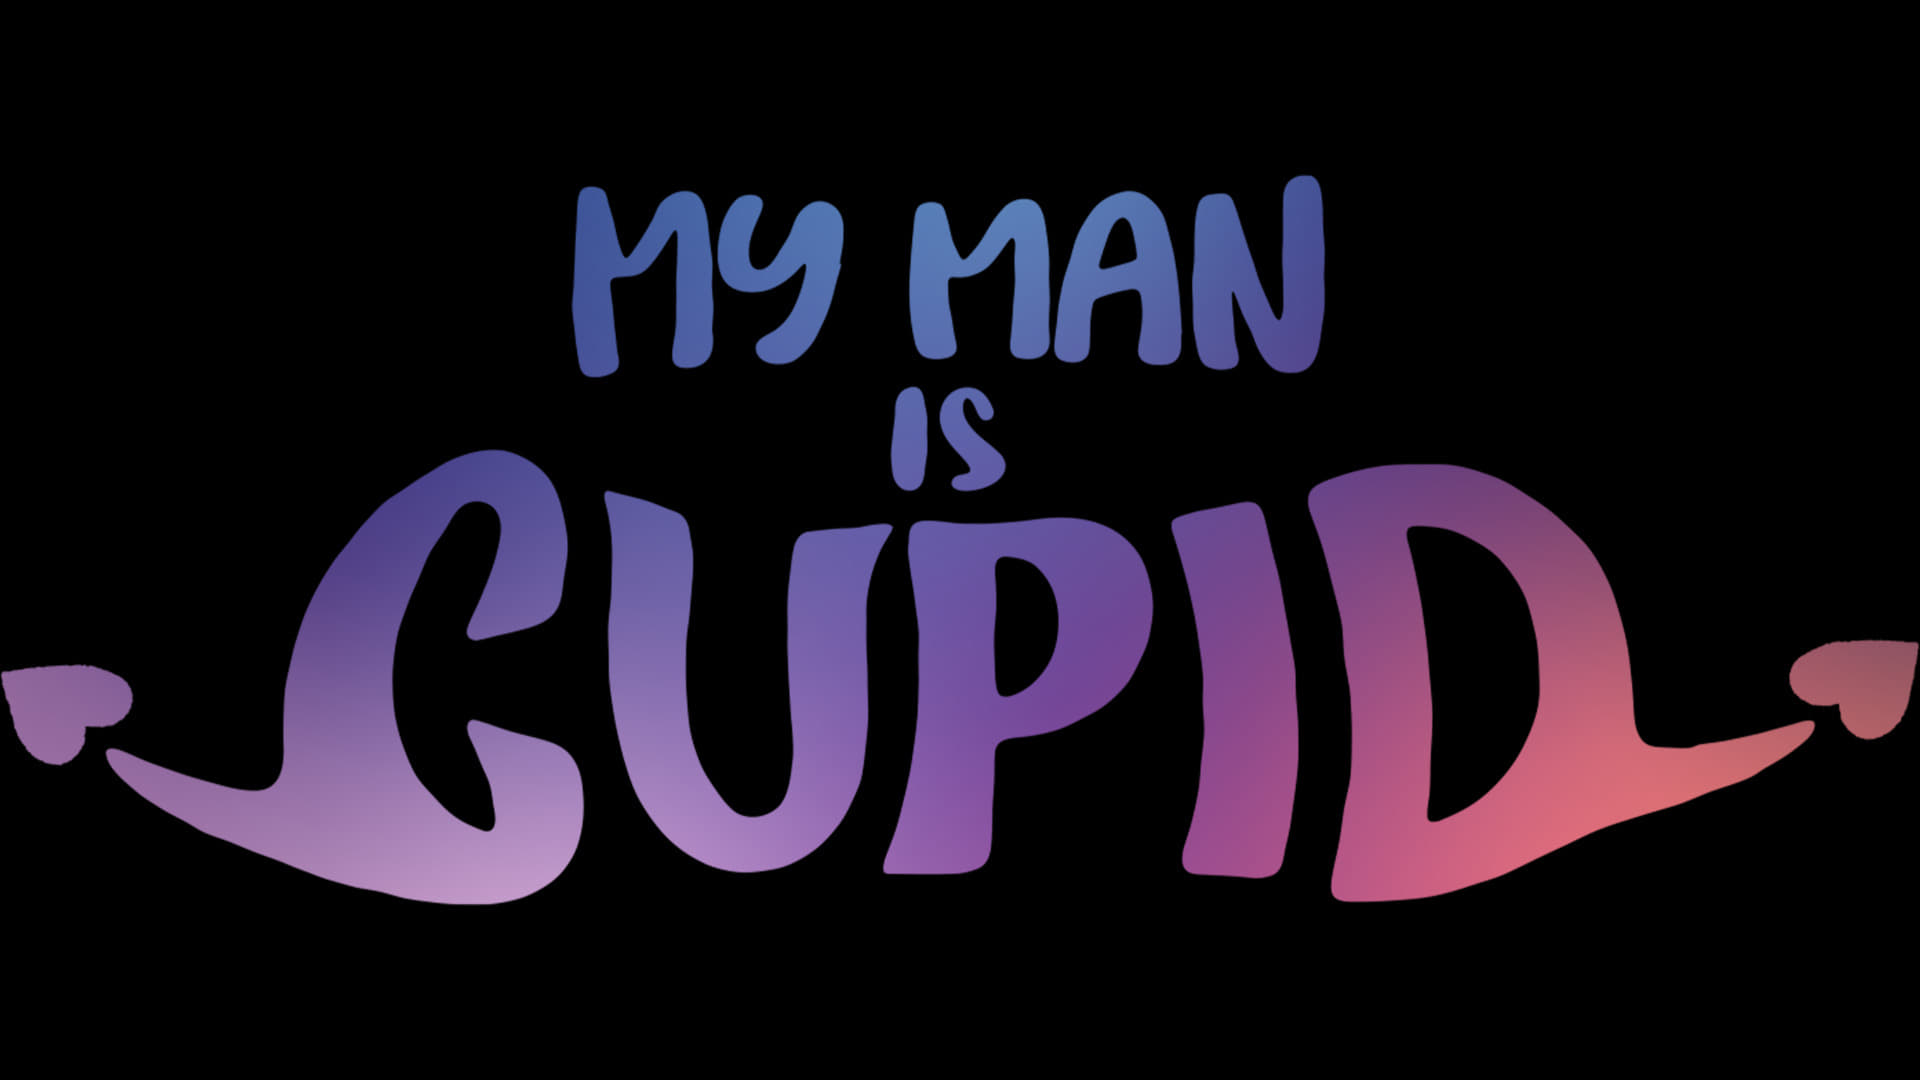 A szerelmem Cupido - Season 1 Episode 2